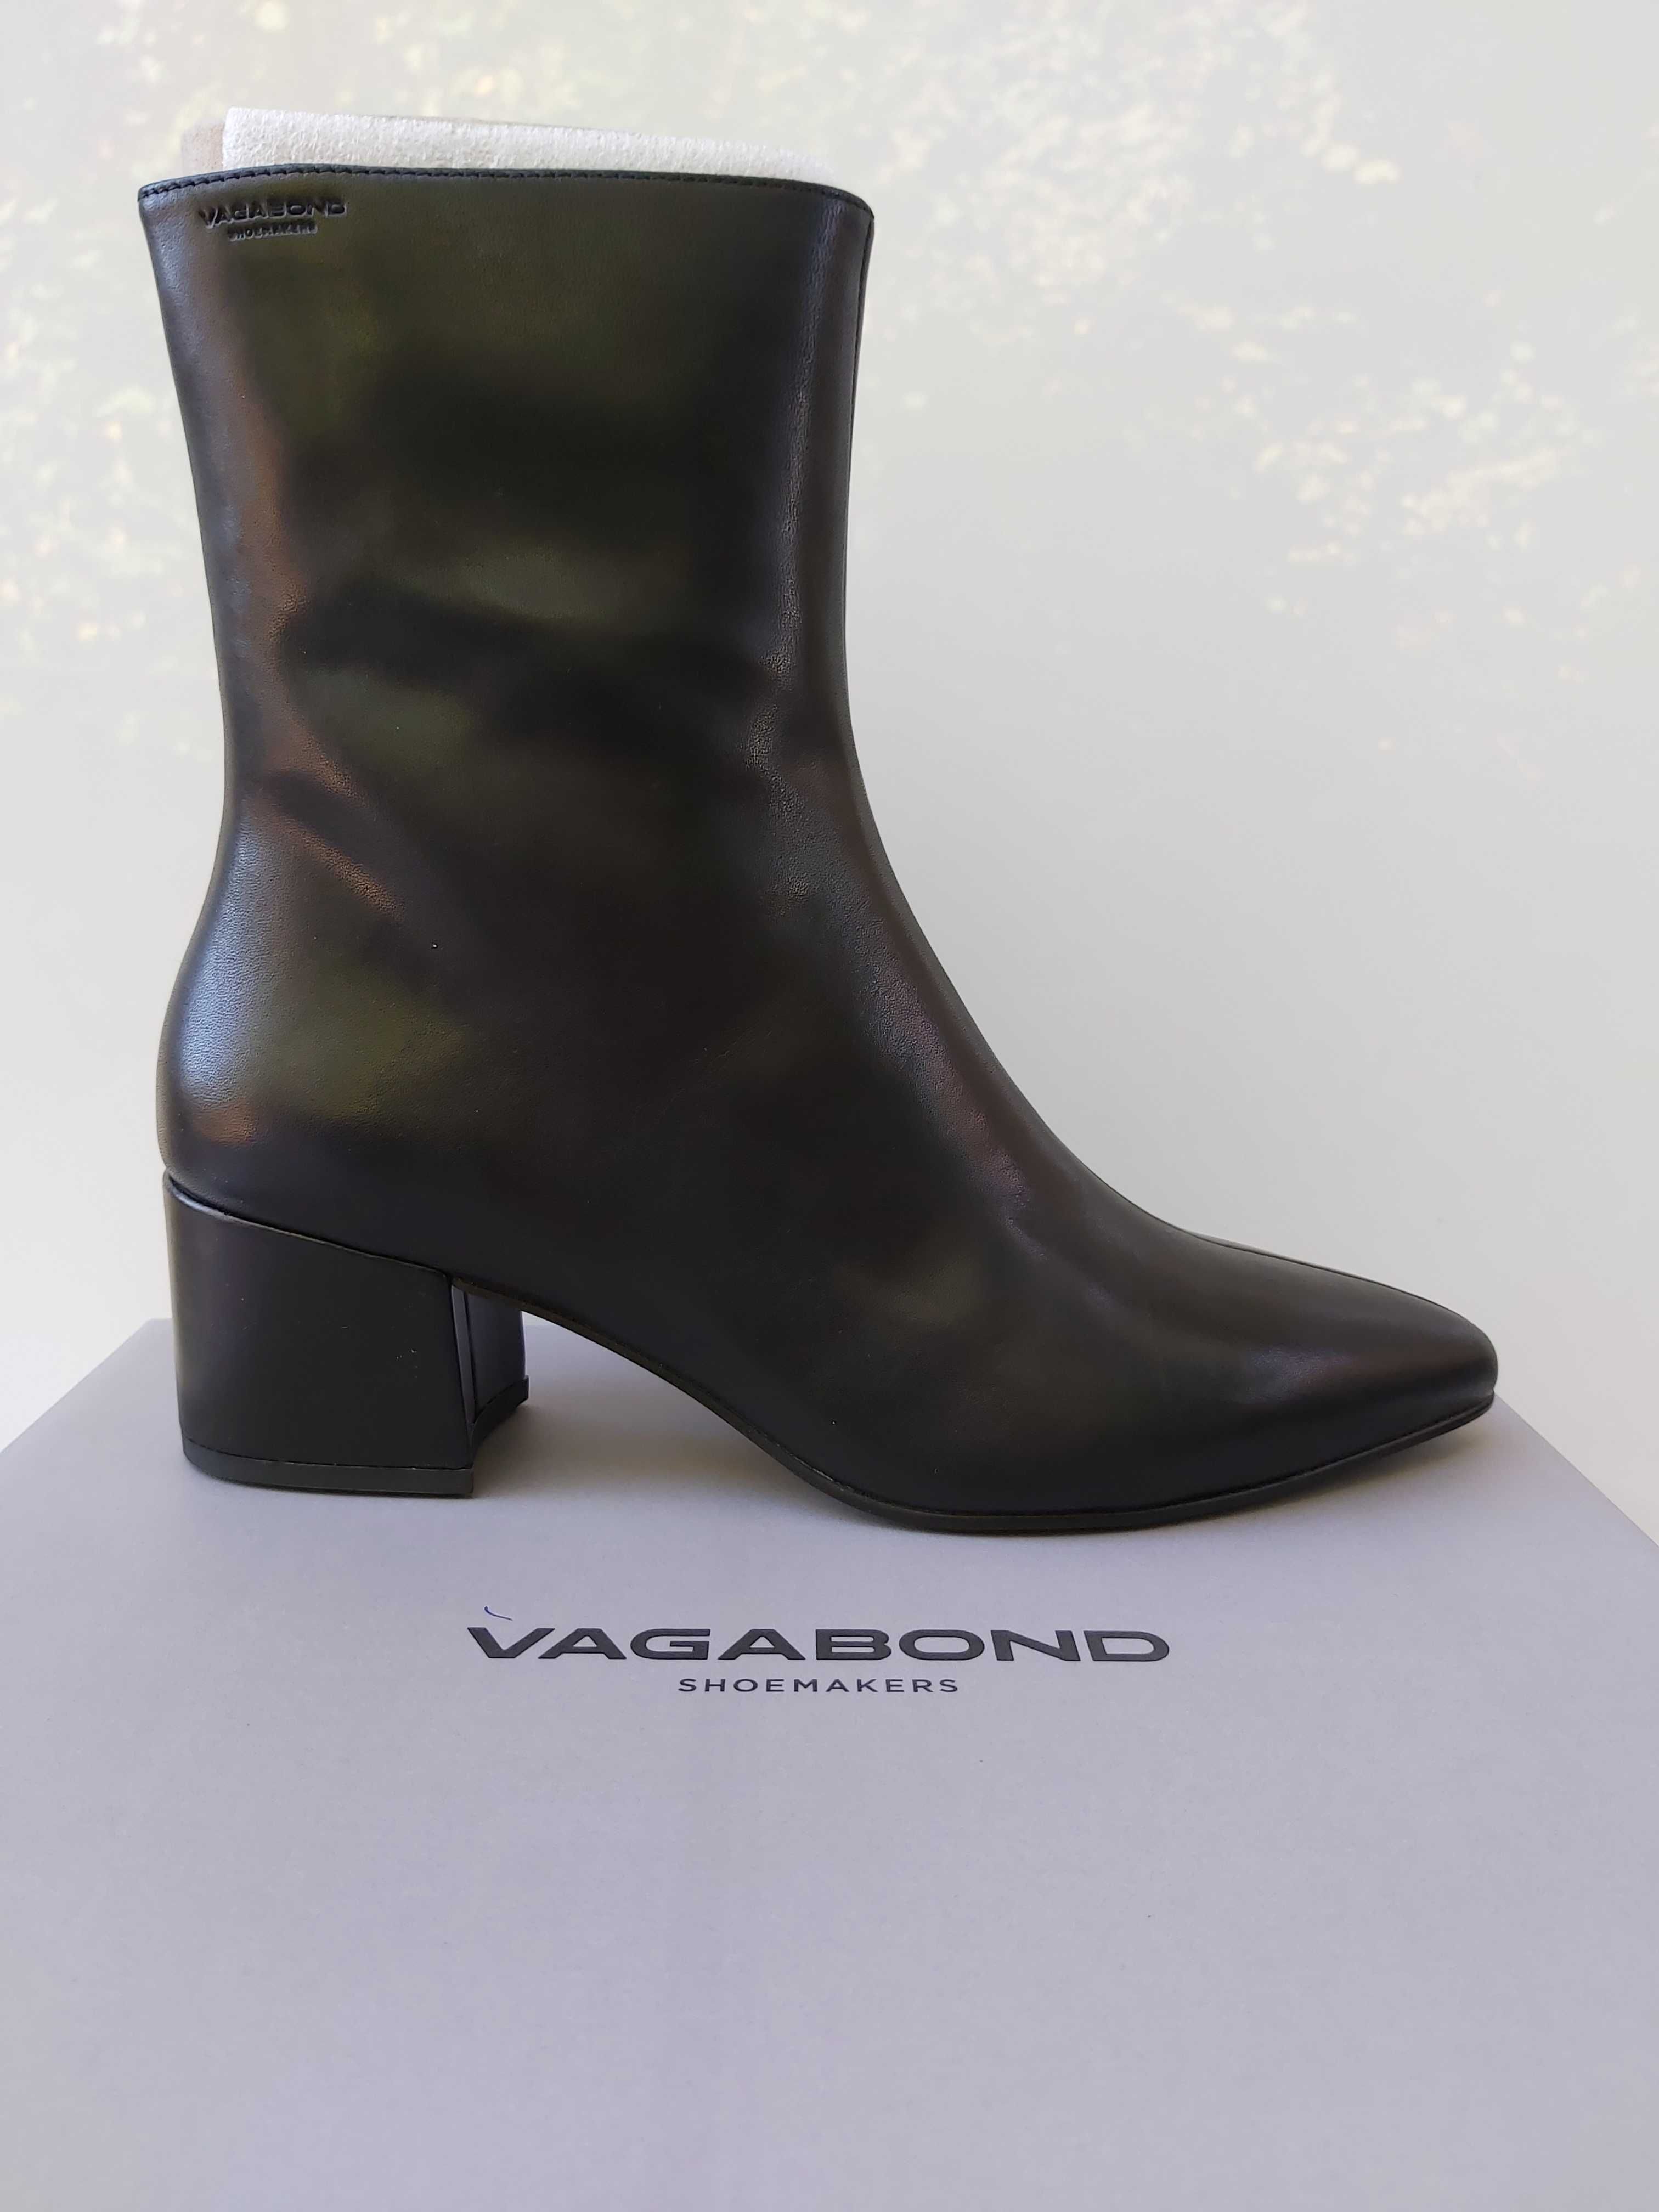 NOWE botki VAGABOND mya rozmiar 38 czarne buty skóra kozaki obcas